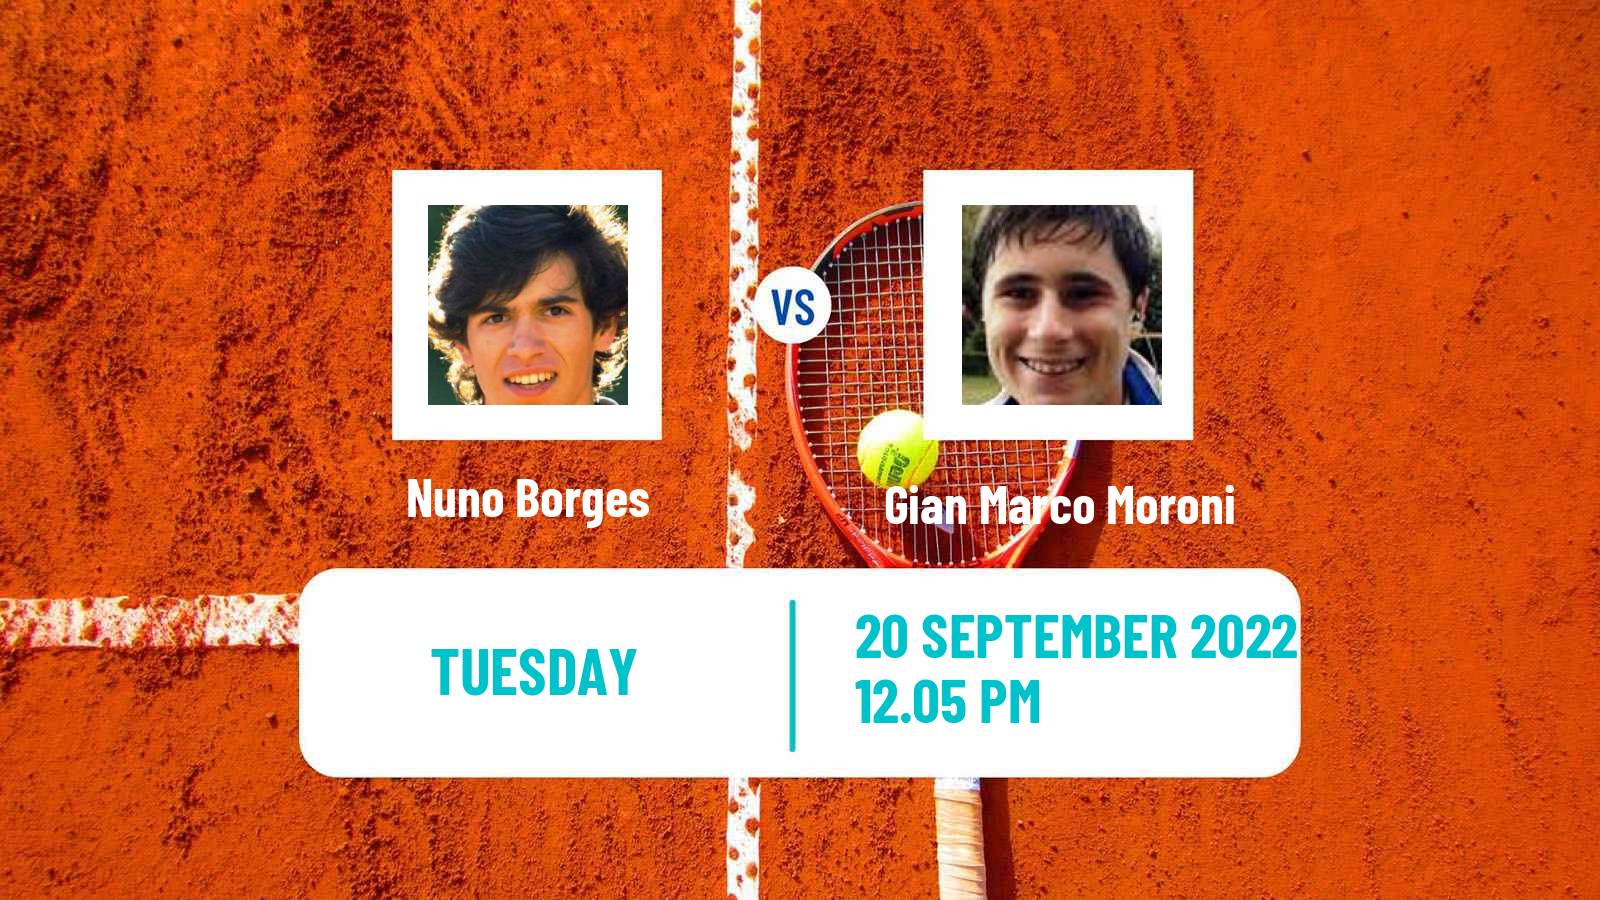 Tennis ATP Challenger Nuno Borges - Gian Marco Moroni